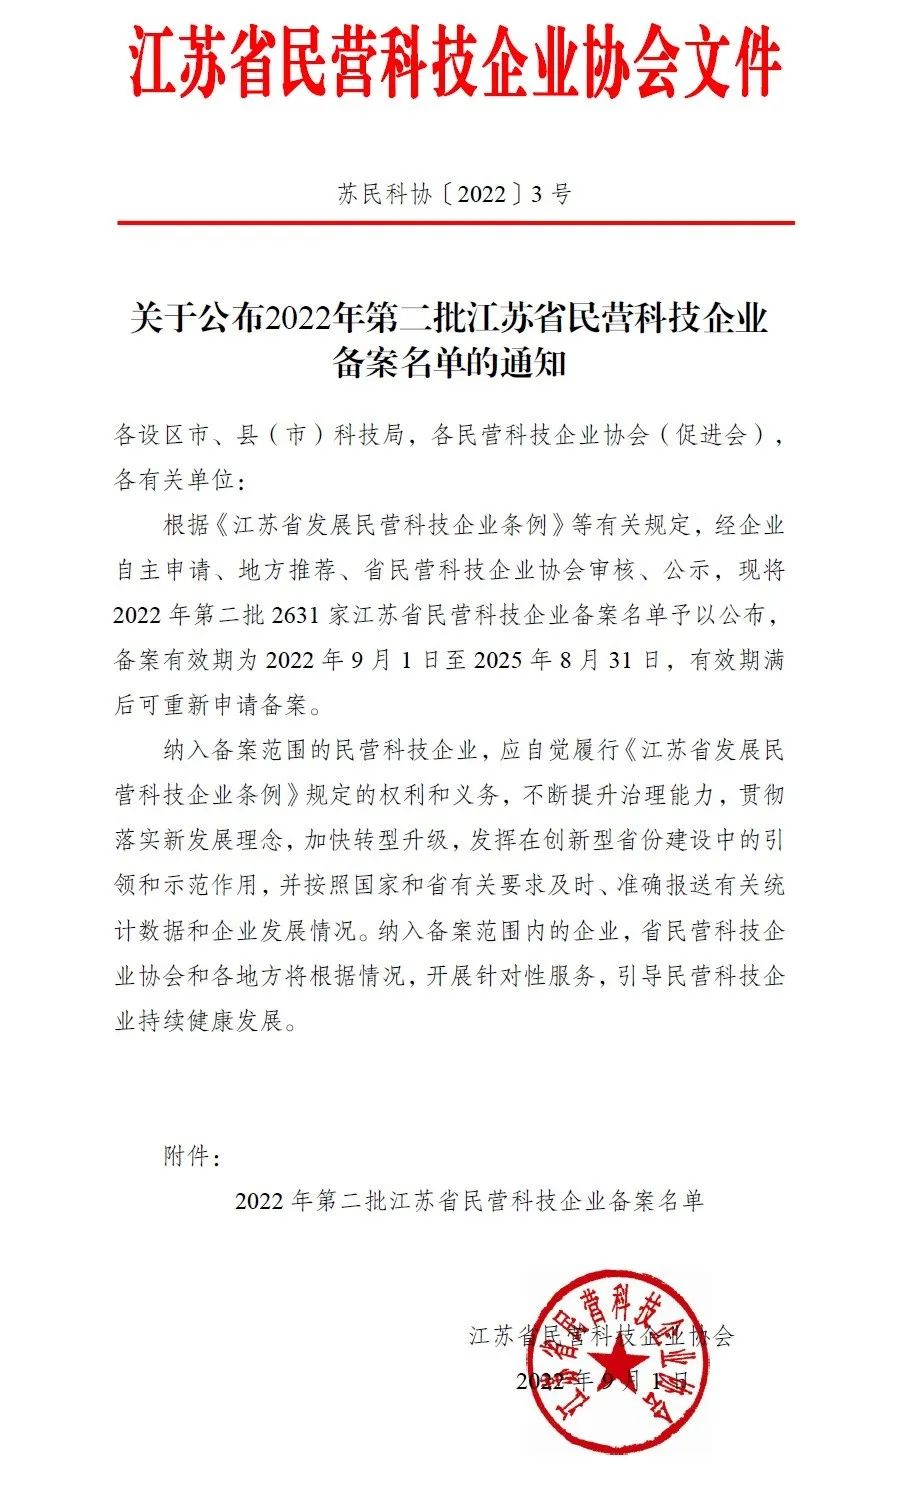 微谱旗下两家子公司成功入选“江苏省民营科技企业”